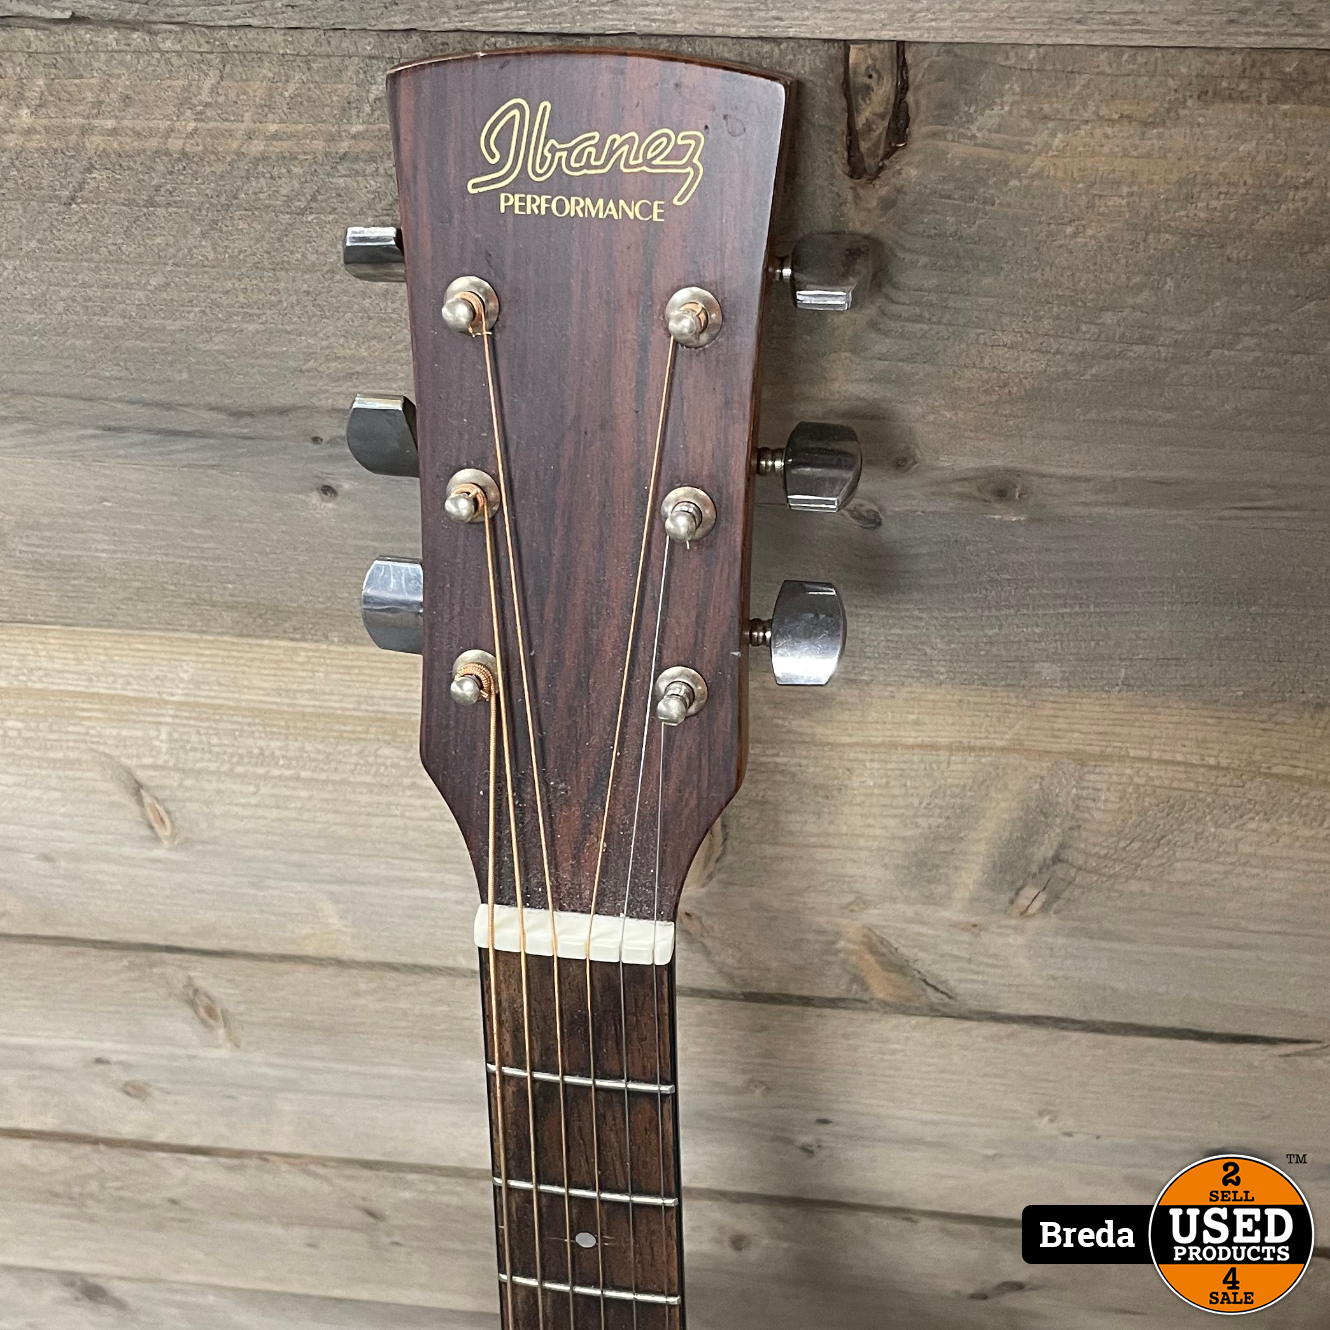 ding Geplooid Gluren Ibanez PF5 akoestische gitaar | Met garantie - Used Products Breda